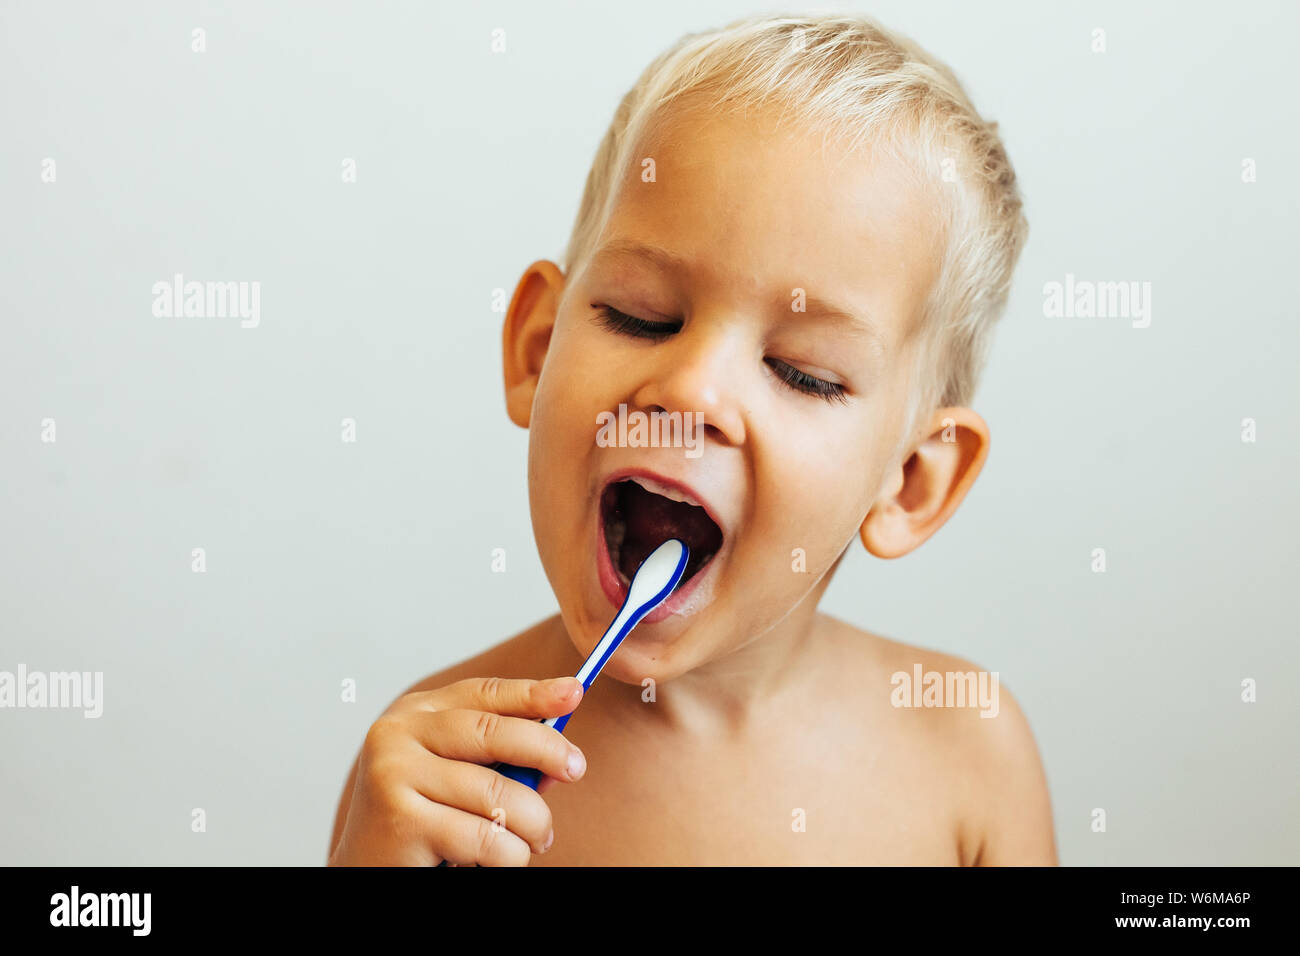 Sorridente ragazzino spazzolatura dei denti Foto Stock